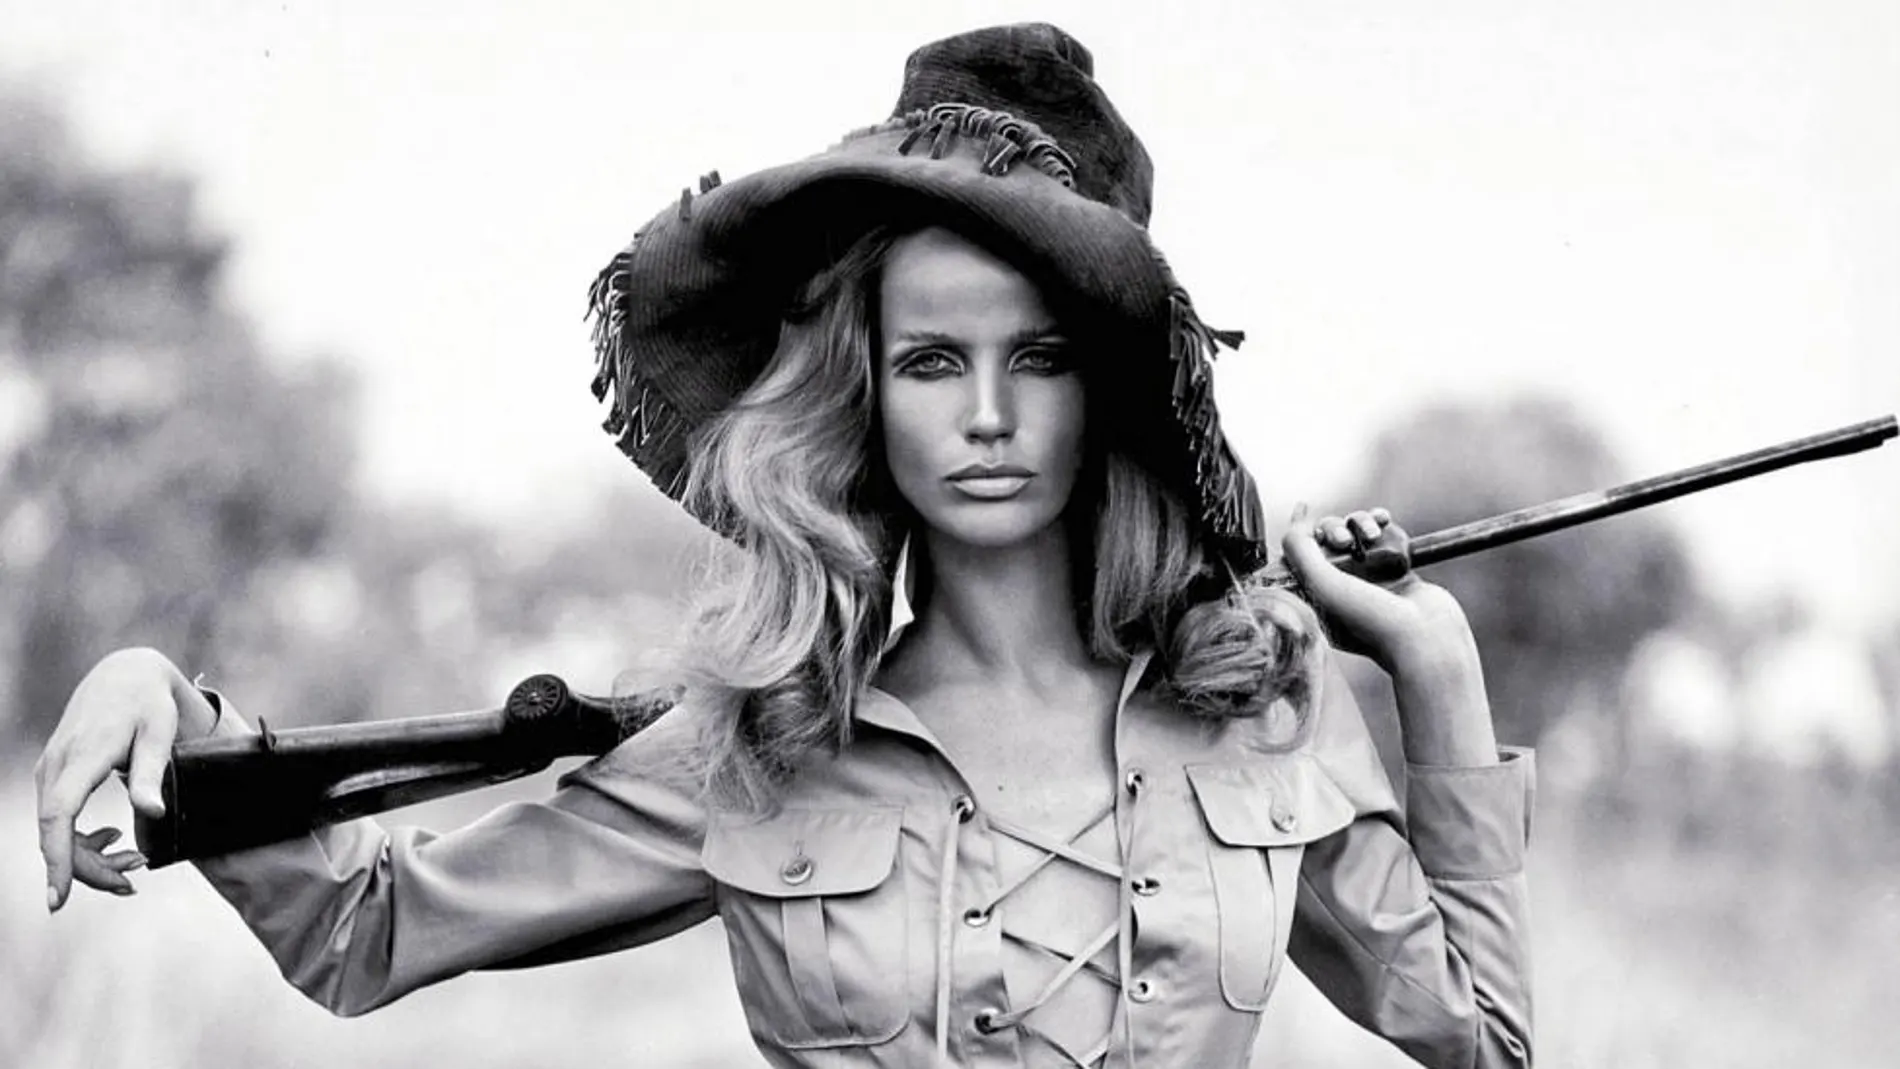 La modelo Vera Gräfin von Lehndorff-Steinort, conocida como Veruschka, en la conocida foto para Yves Saint Laurent